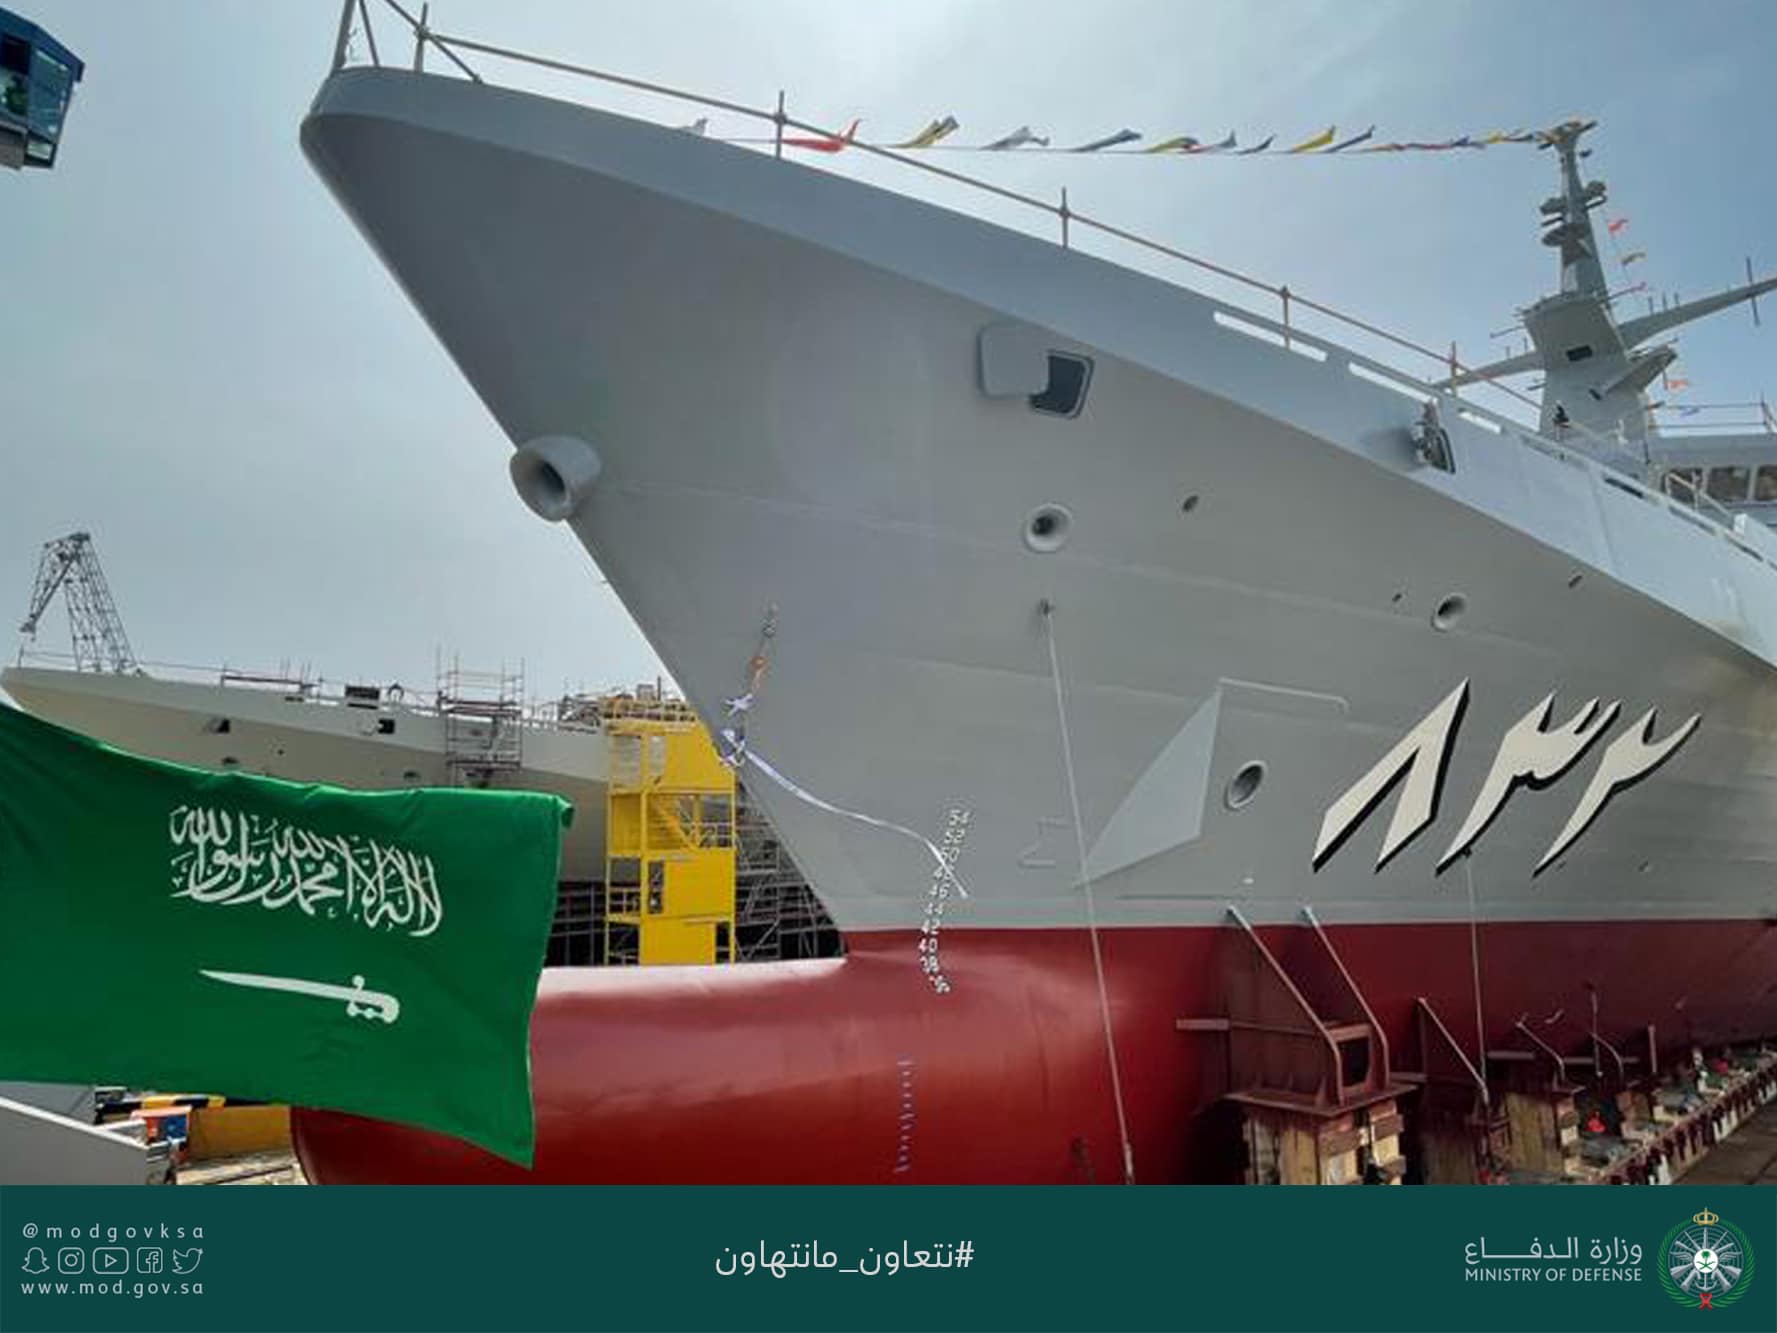 الجيش السعودي يكشف عن سفينة حربية جديدة تمتلك أحدث التقنيات القتالية